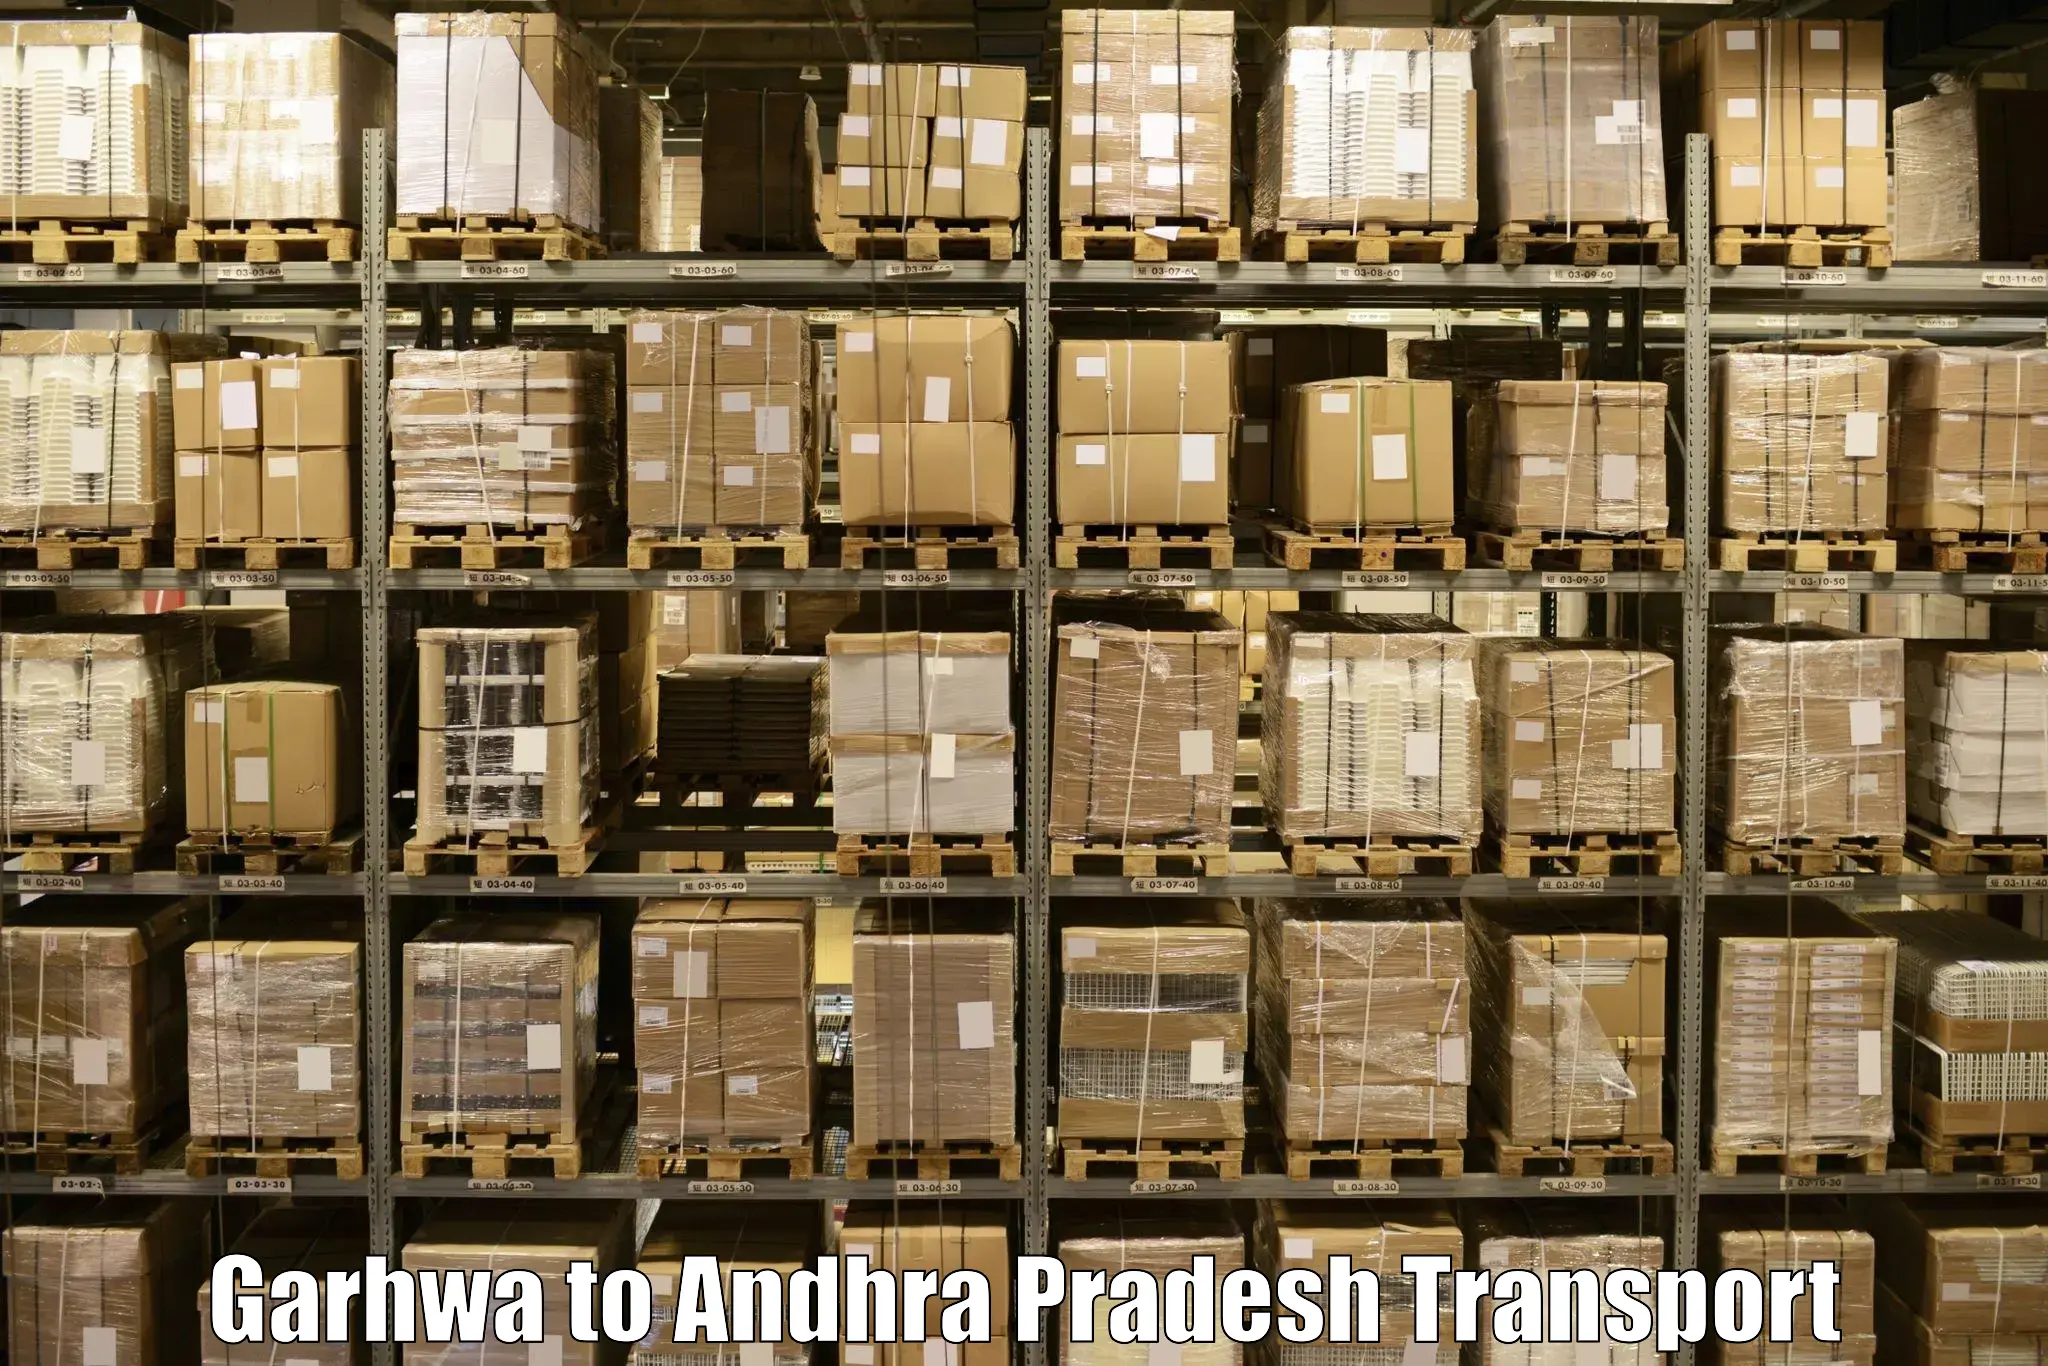 Online transport Garhwa to Andhra Pradesh